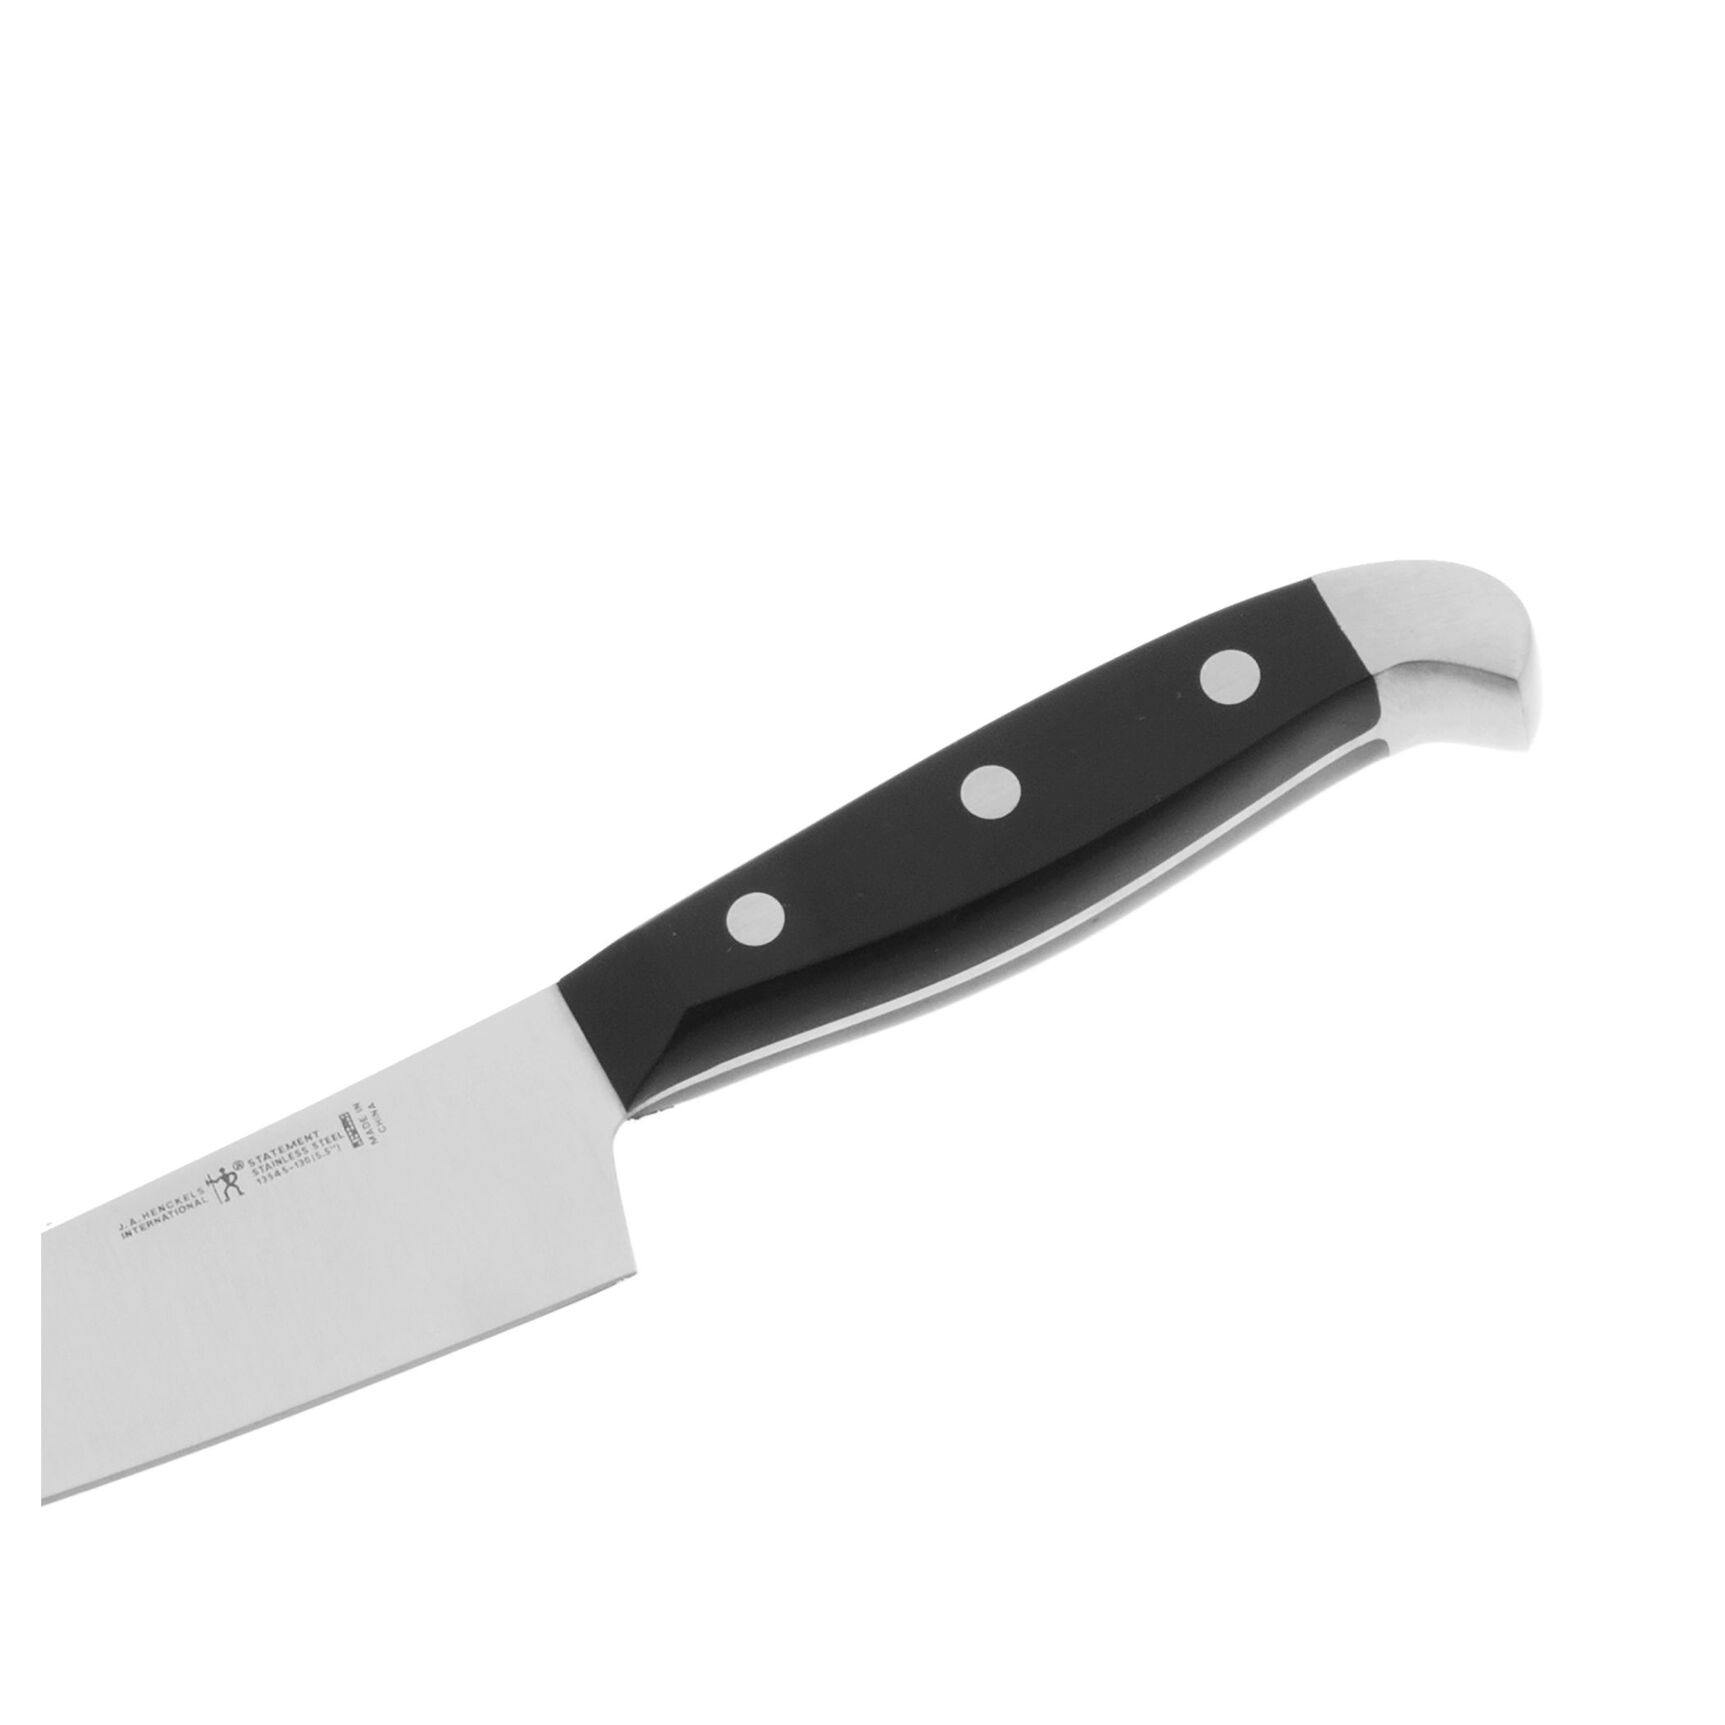 Henckels Statement 5.5-inch Fine Edge Prep Knife